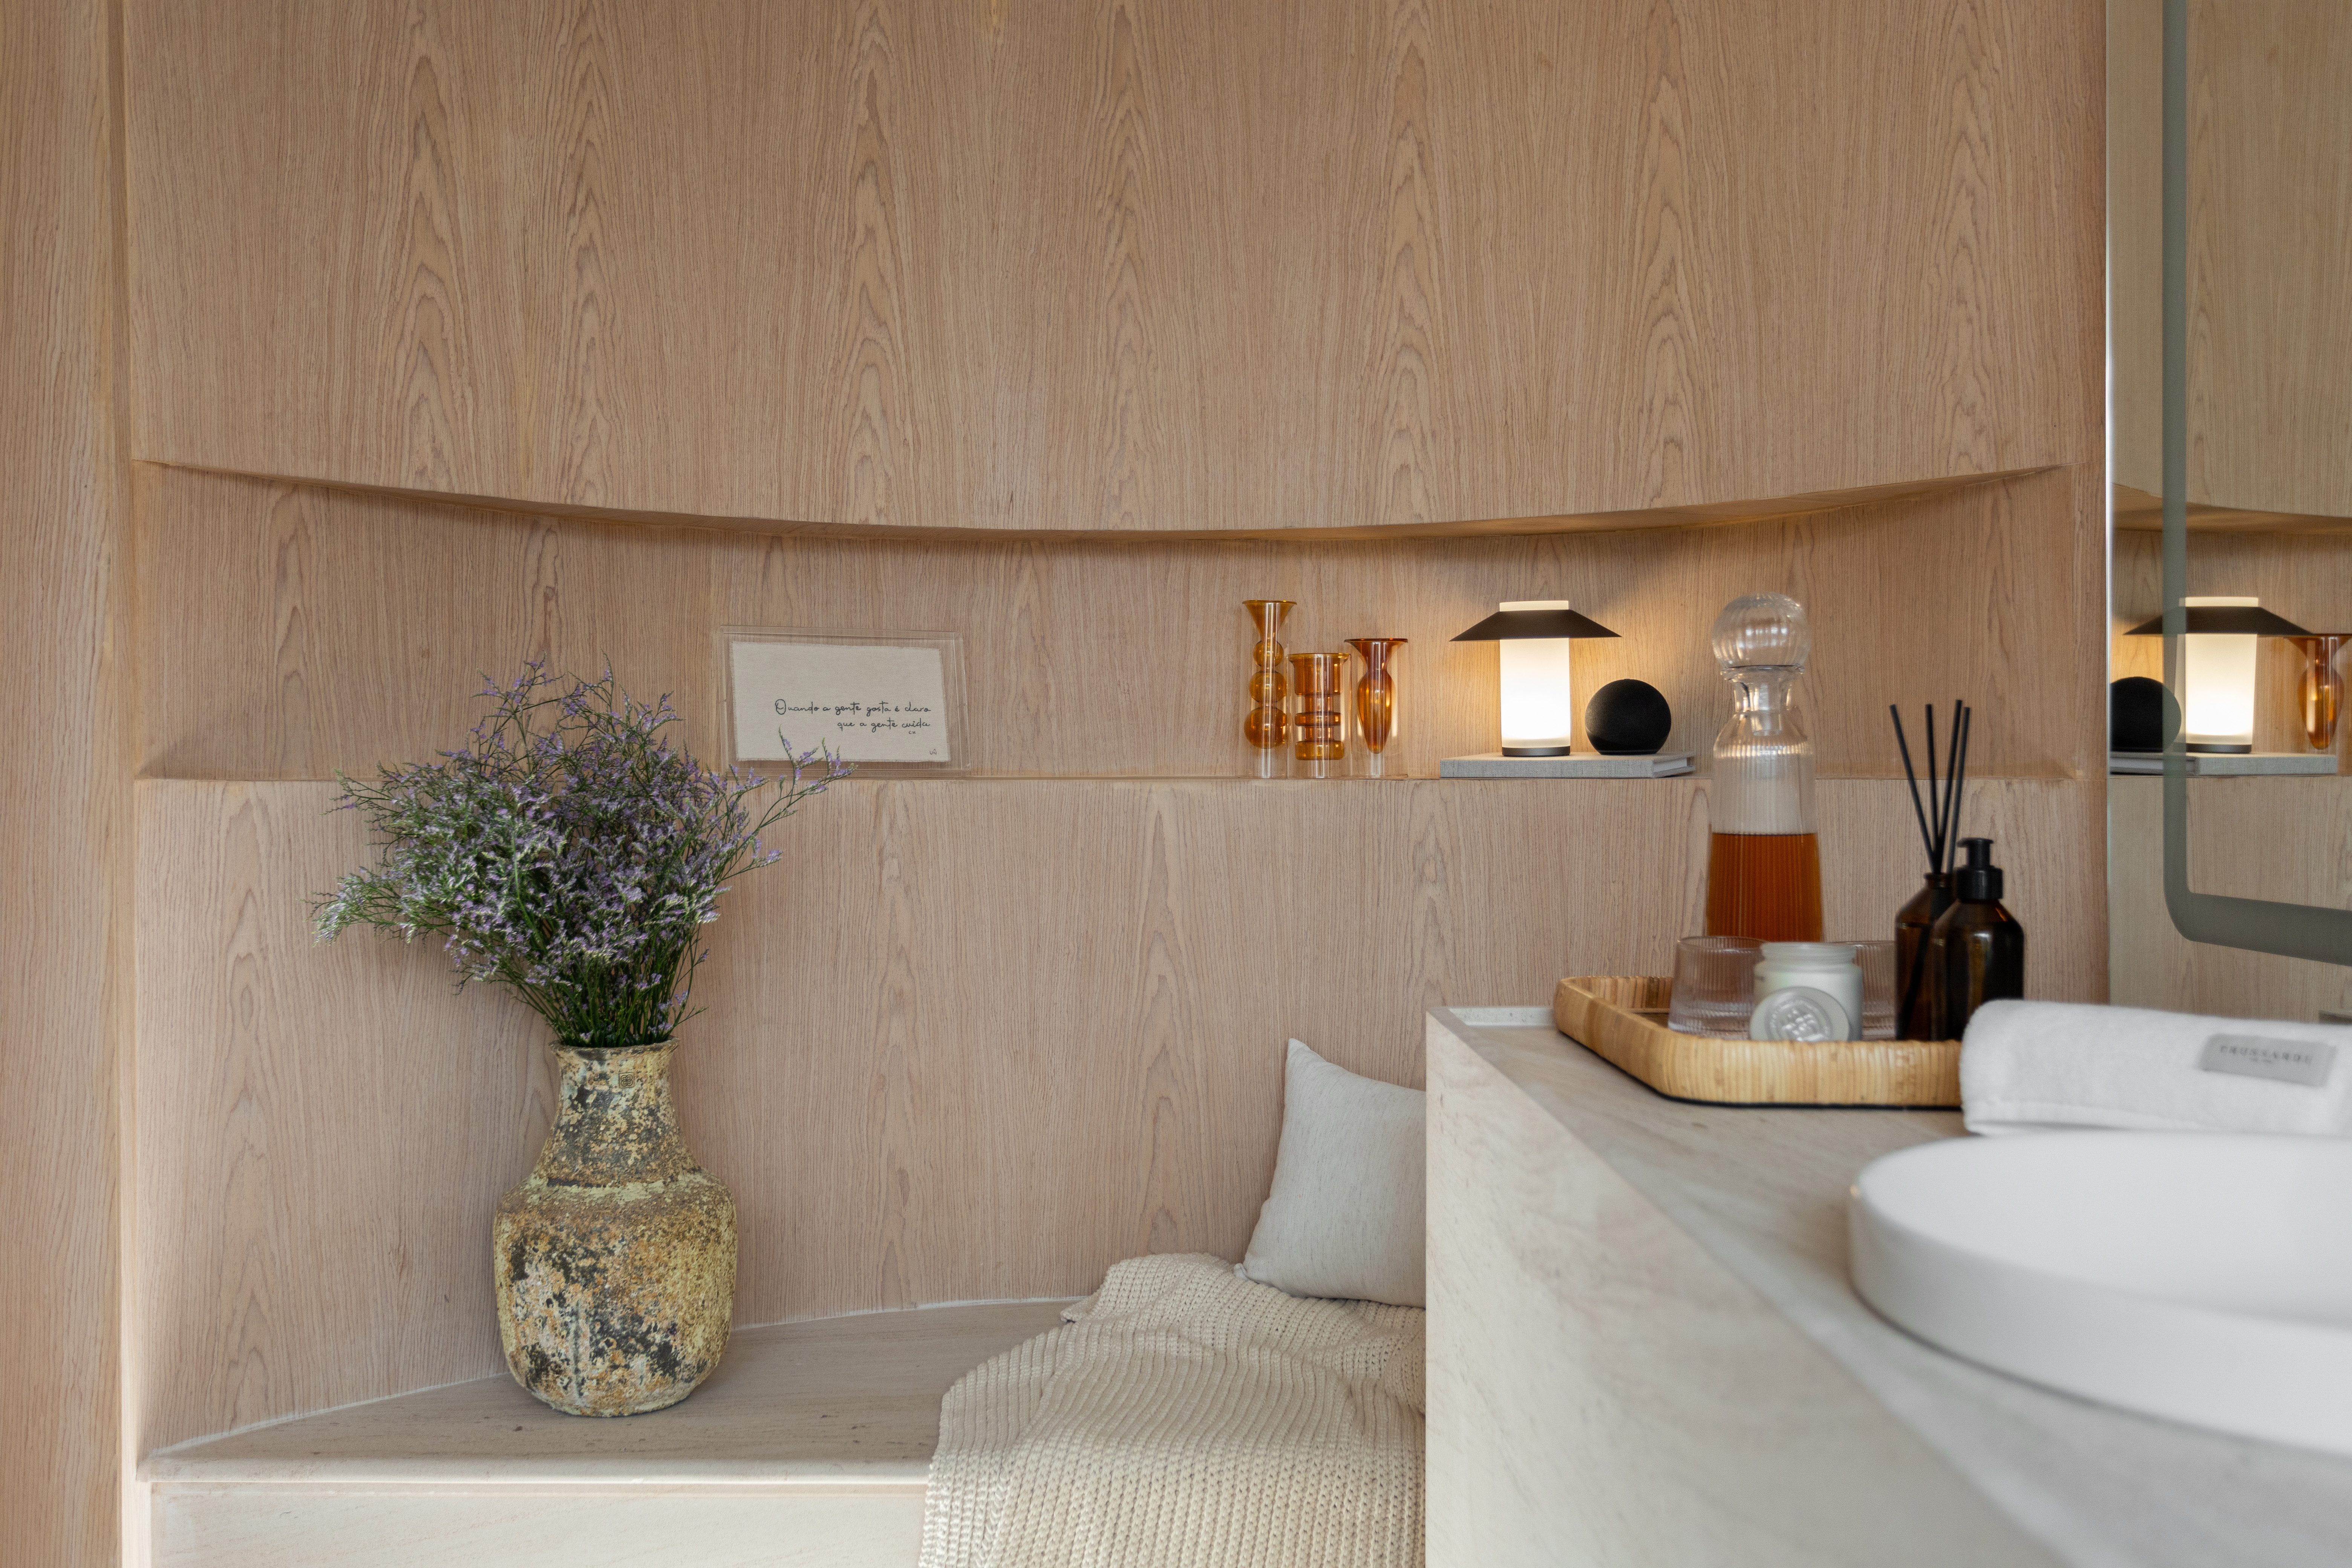 SPA em Casa: banheiro conecta arquitetura e natureza. Projeto de Bruno Dutkievicz e Raphael Meza. Na foto, banheiro com espaço para relaxamento